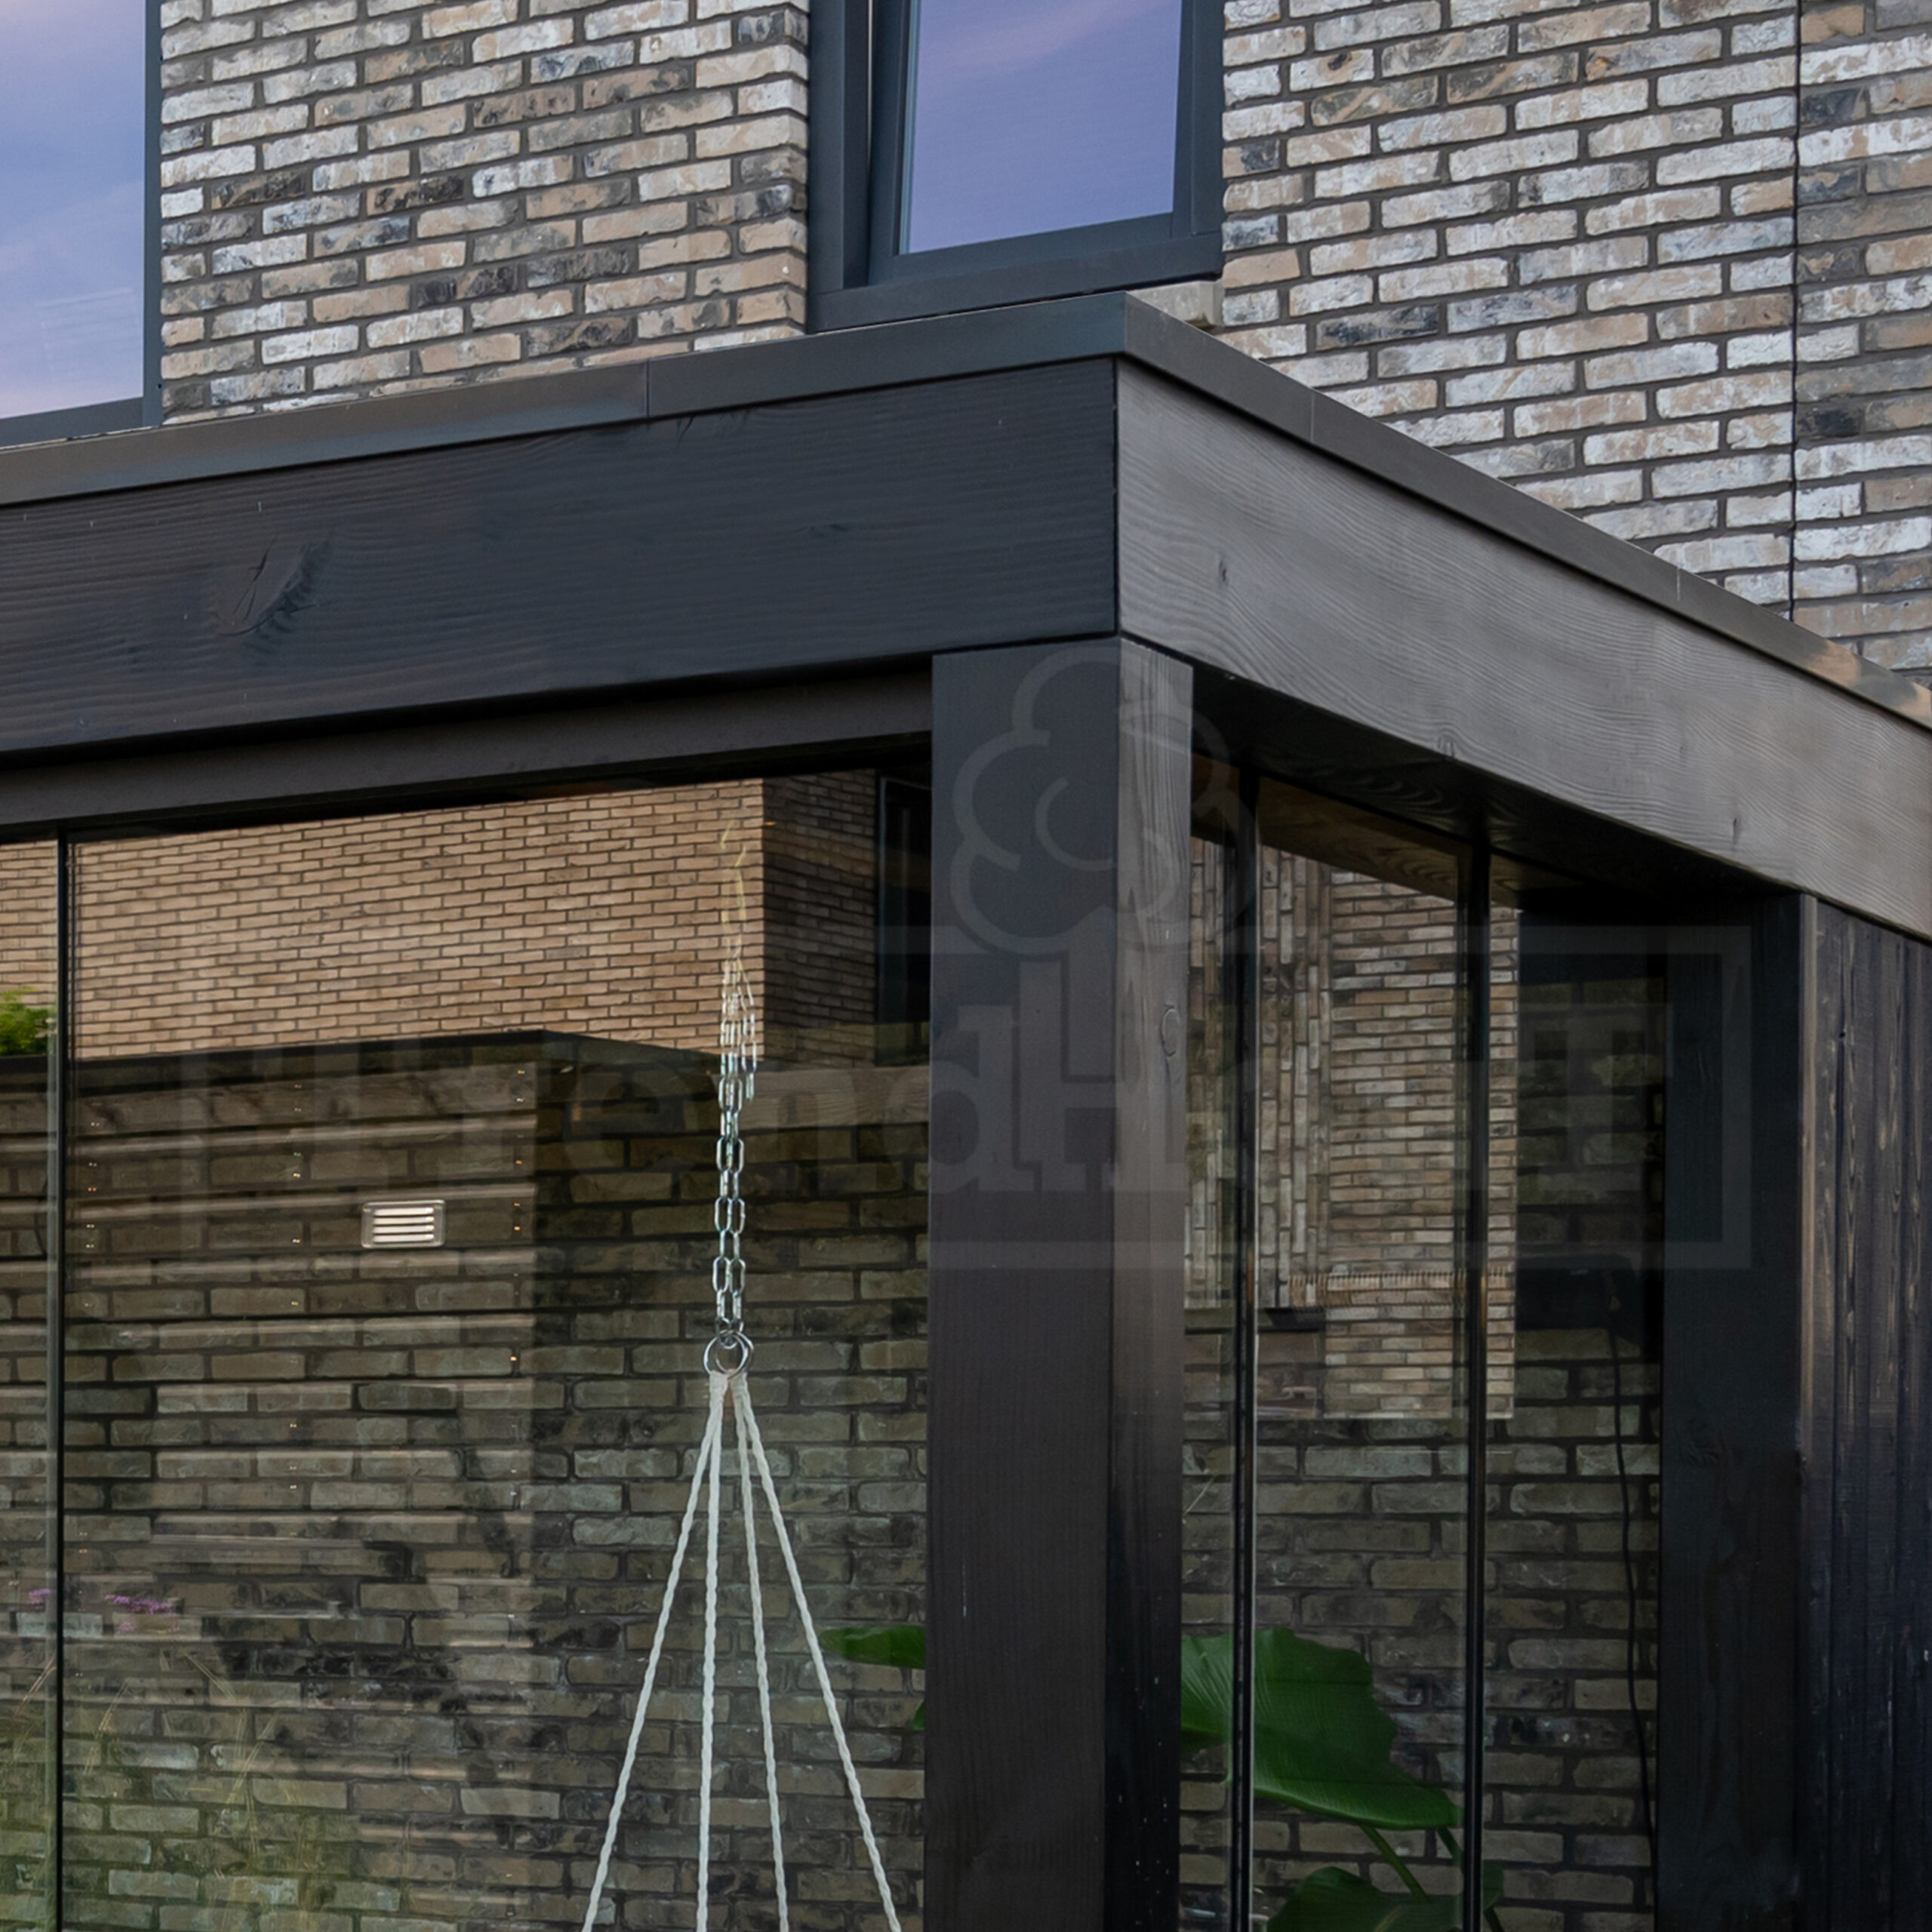 palermo-Xxl-in-kleur-zwart-gespoten-moderne-overkapping-met-lichtstraat-aan-huis-Trendhout-bouwpakket-strakke-afwerking-w